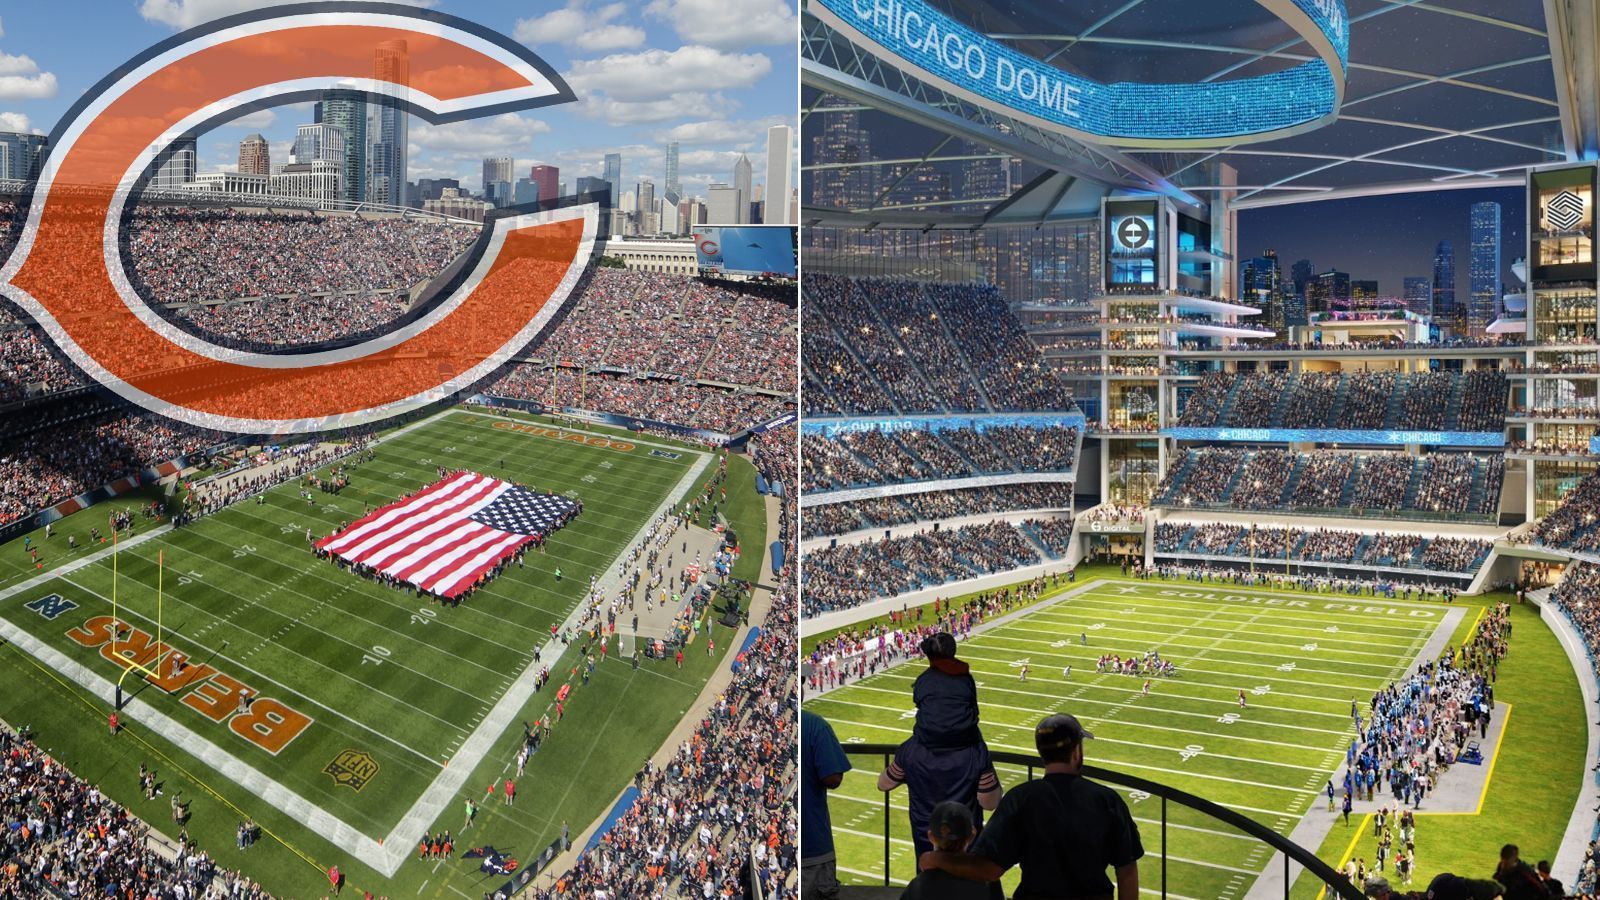 
                <strong>Chicago will aus Soldier Field einen Dome machen</strong><br>
                Die Chicago Bears wollen aus dem alternden Soldier Field ausziehen und haben sich dafür schon ein Grundstück gekauft. Doch die Stadt will das Team im heimischen Stadion behalten - und hat nun spektakuläre Pläne für einen Umbau vorgestellt.
              